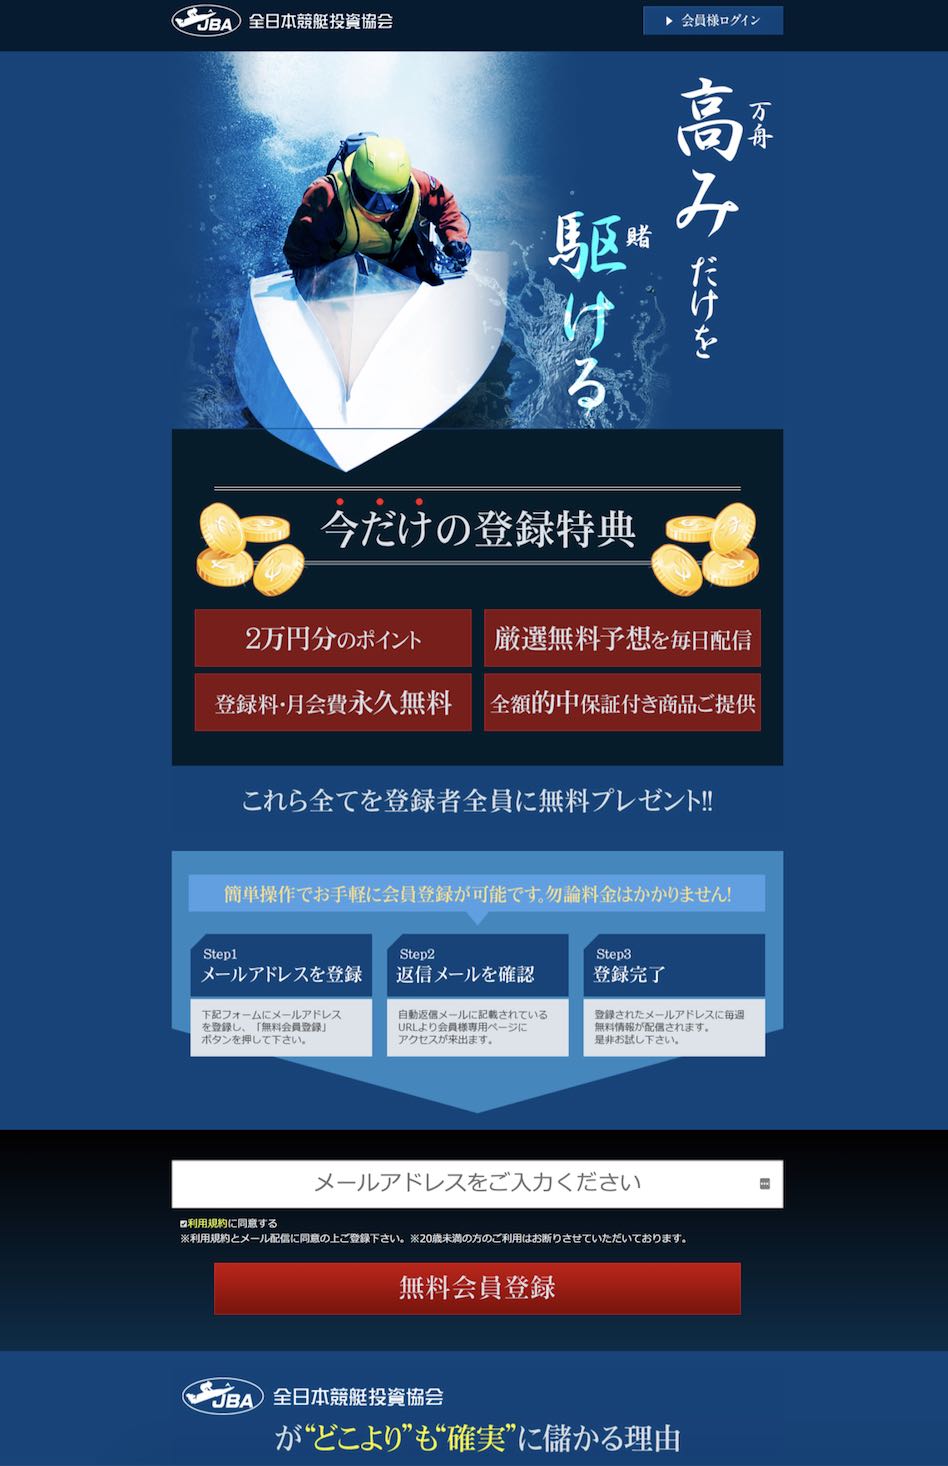 競艇・ボートレース予想サイト「JBA 全日本競艇投資協会」について検証